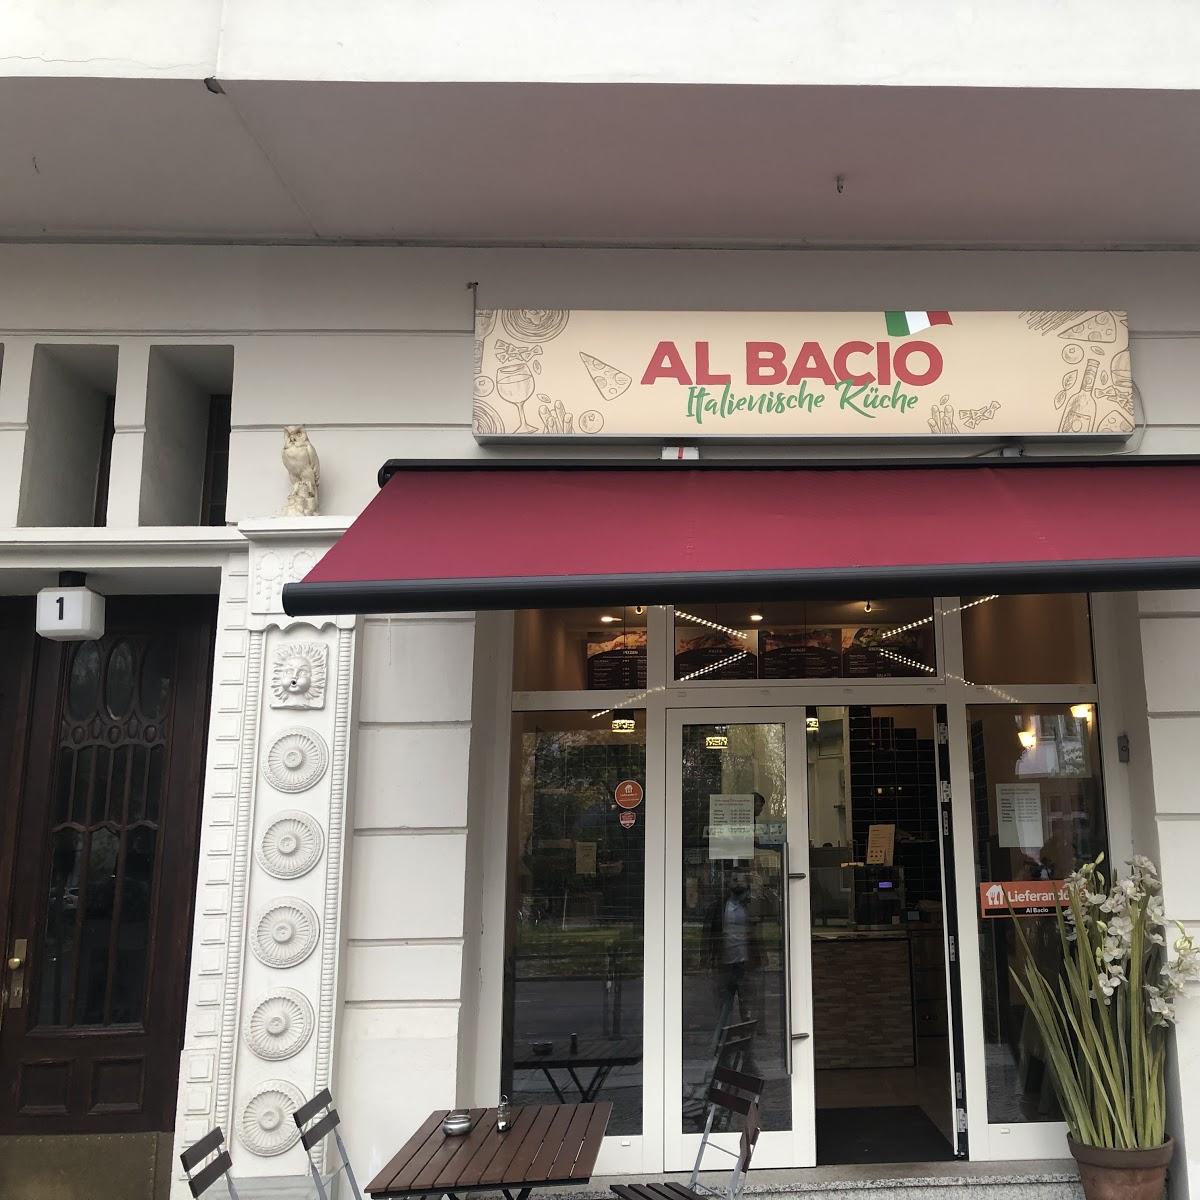 Restaurant "Al Bacio" in Berlin